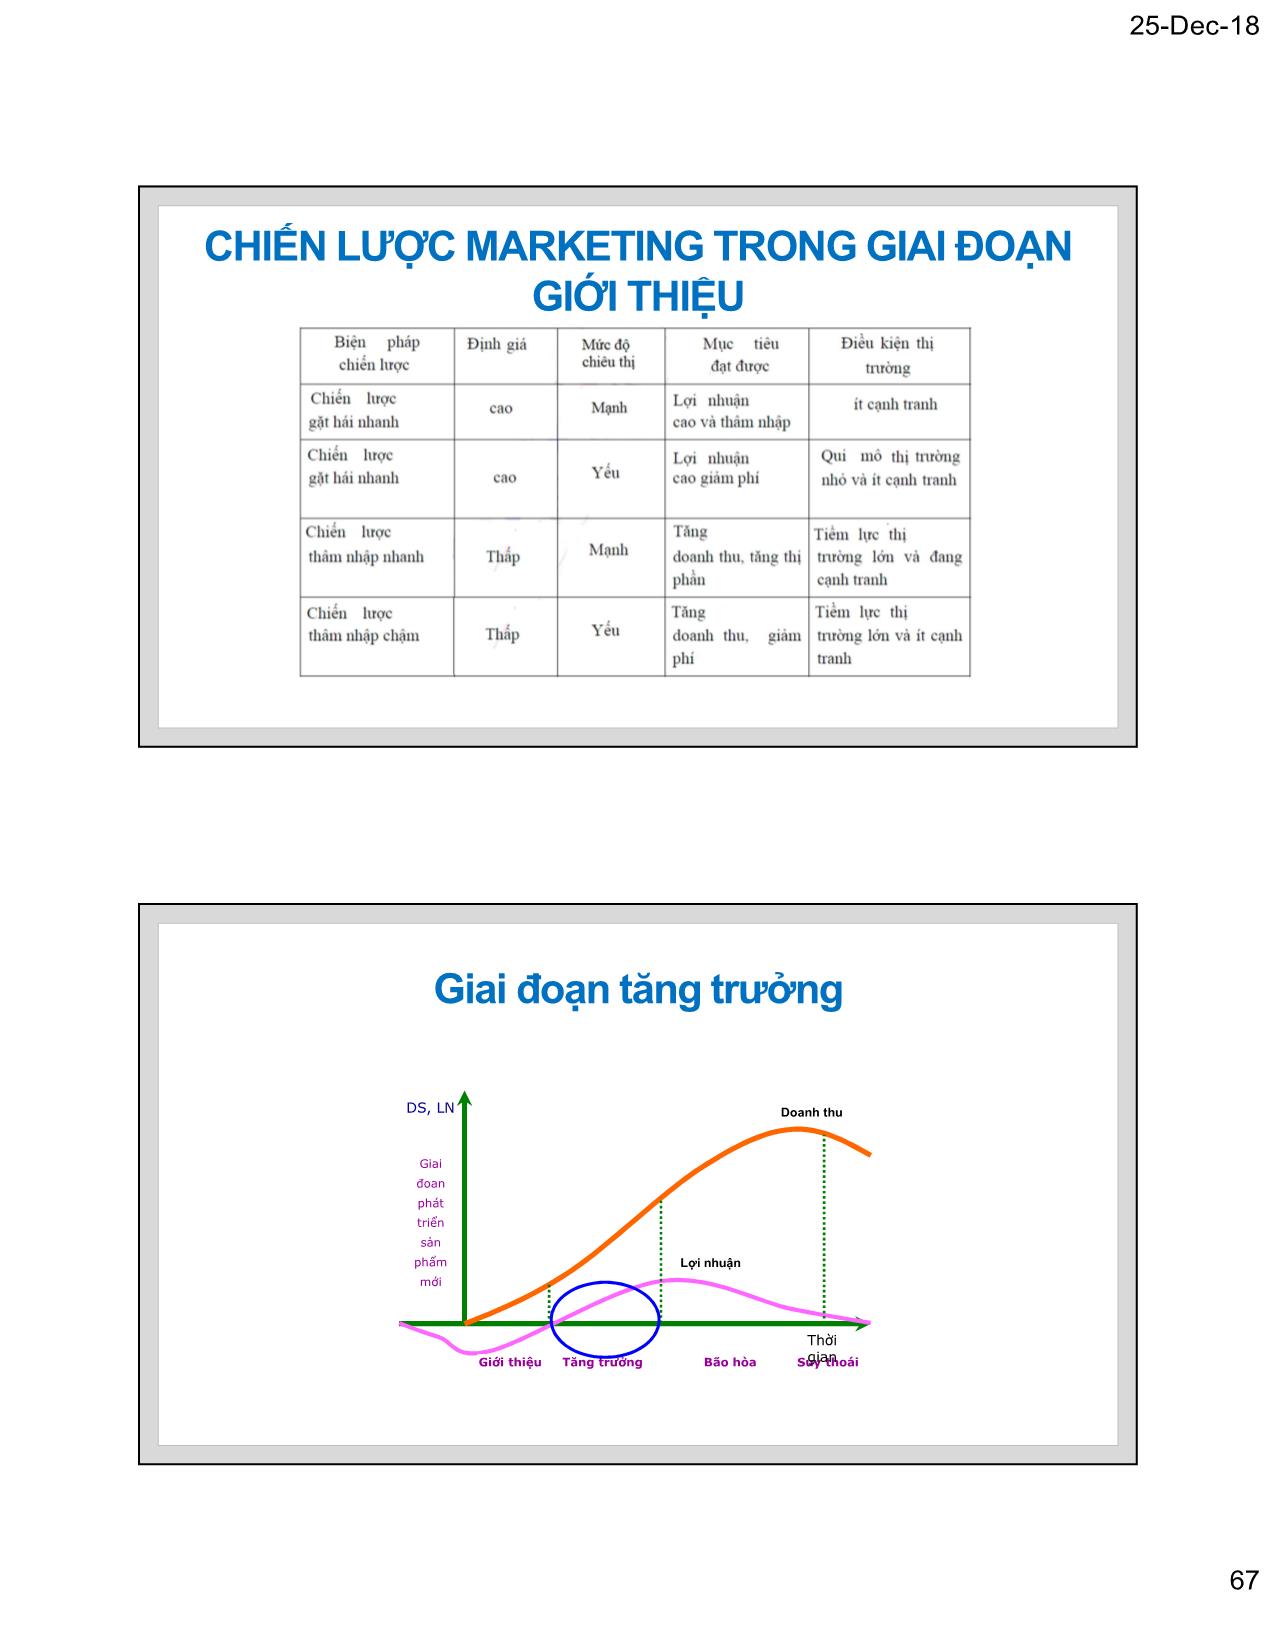 Bài giảng Marketing thương mại - Chương 5: Chiến lược marketing và tham số sản phẩm - Nguyễn Tường Huy trang 7